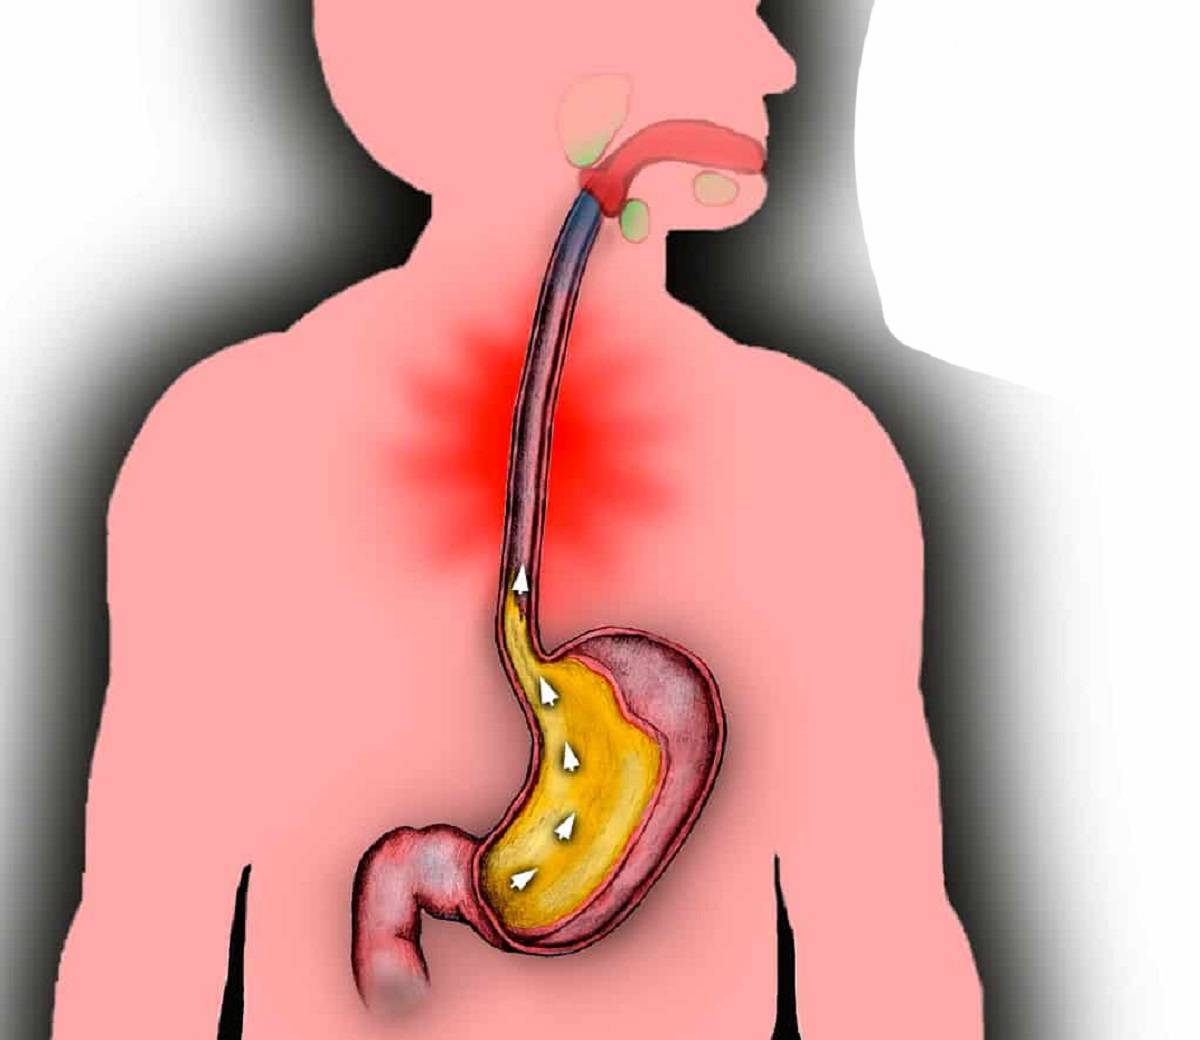 Заброс кислоты из желудка в пищевод